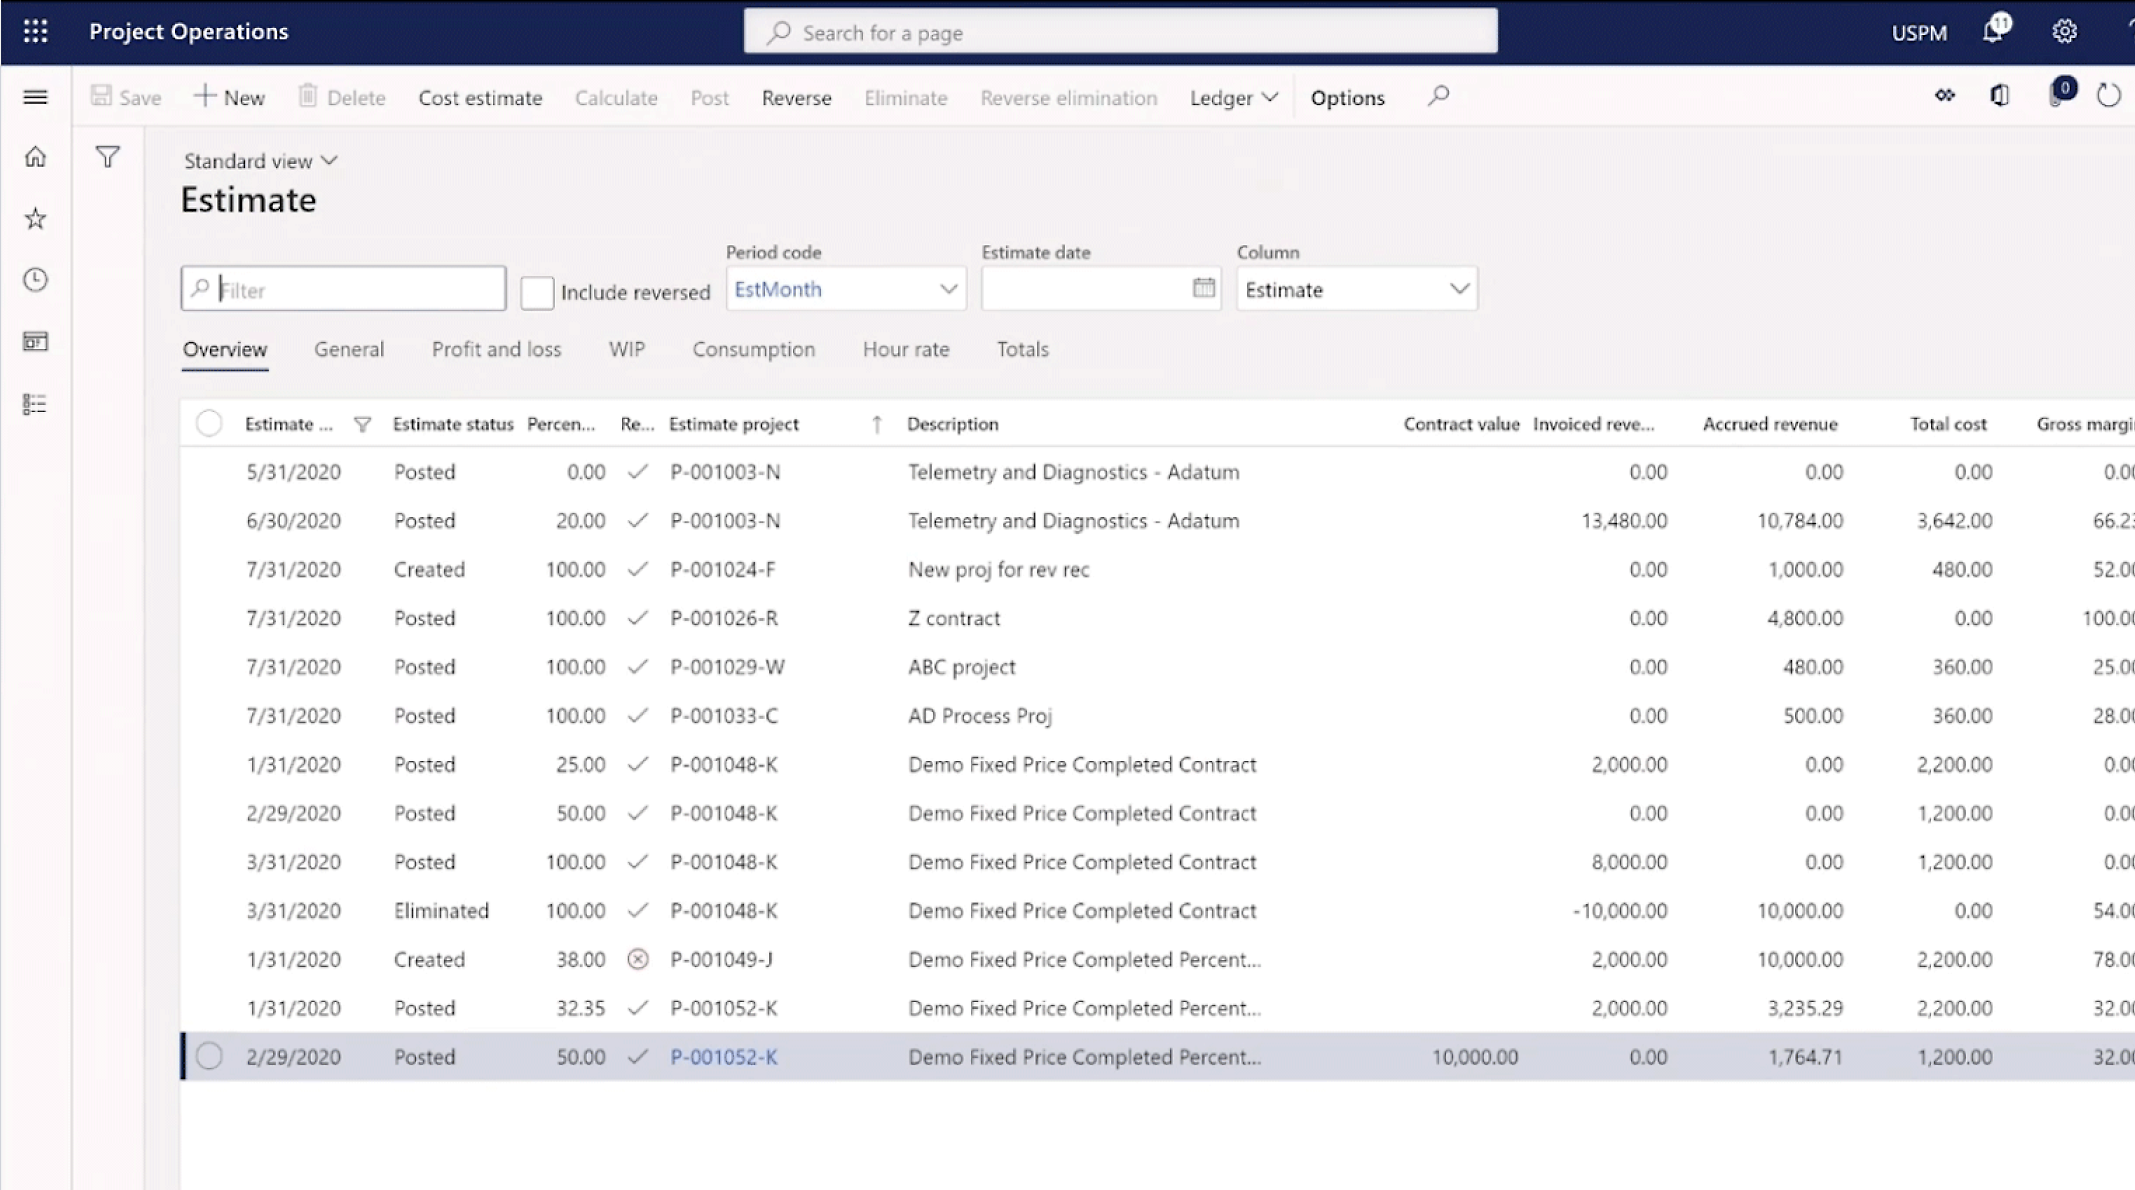 Capture d’écran montrant une feuille de calcul Microsoft Excel avec plusieurs colonnes et lignes contenant des données d’estimation de projet.